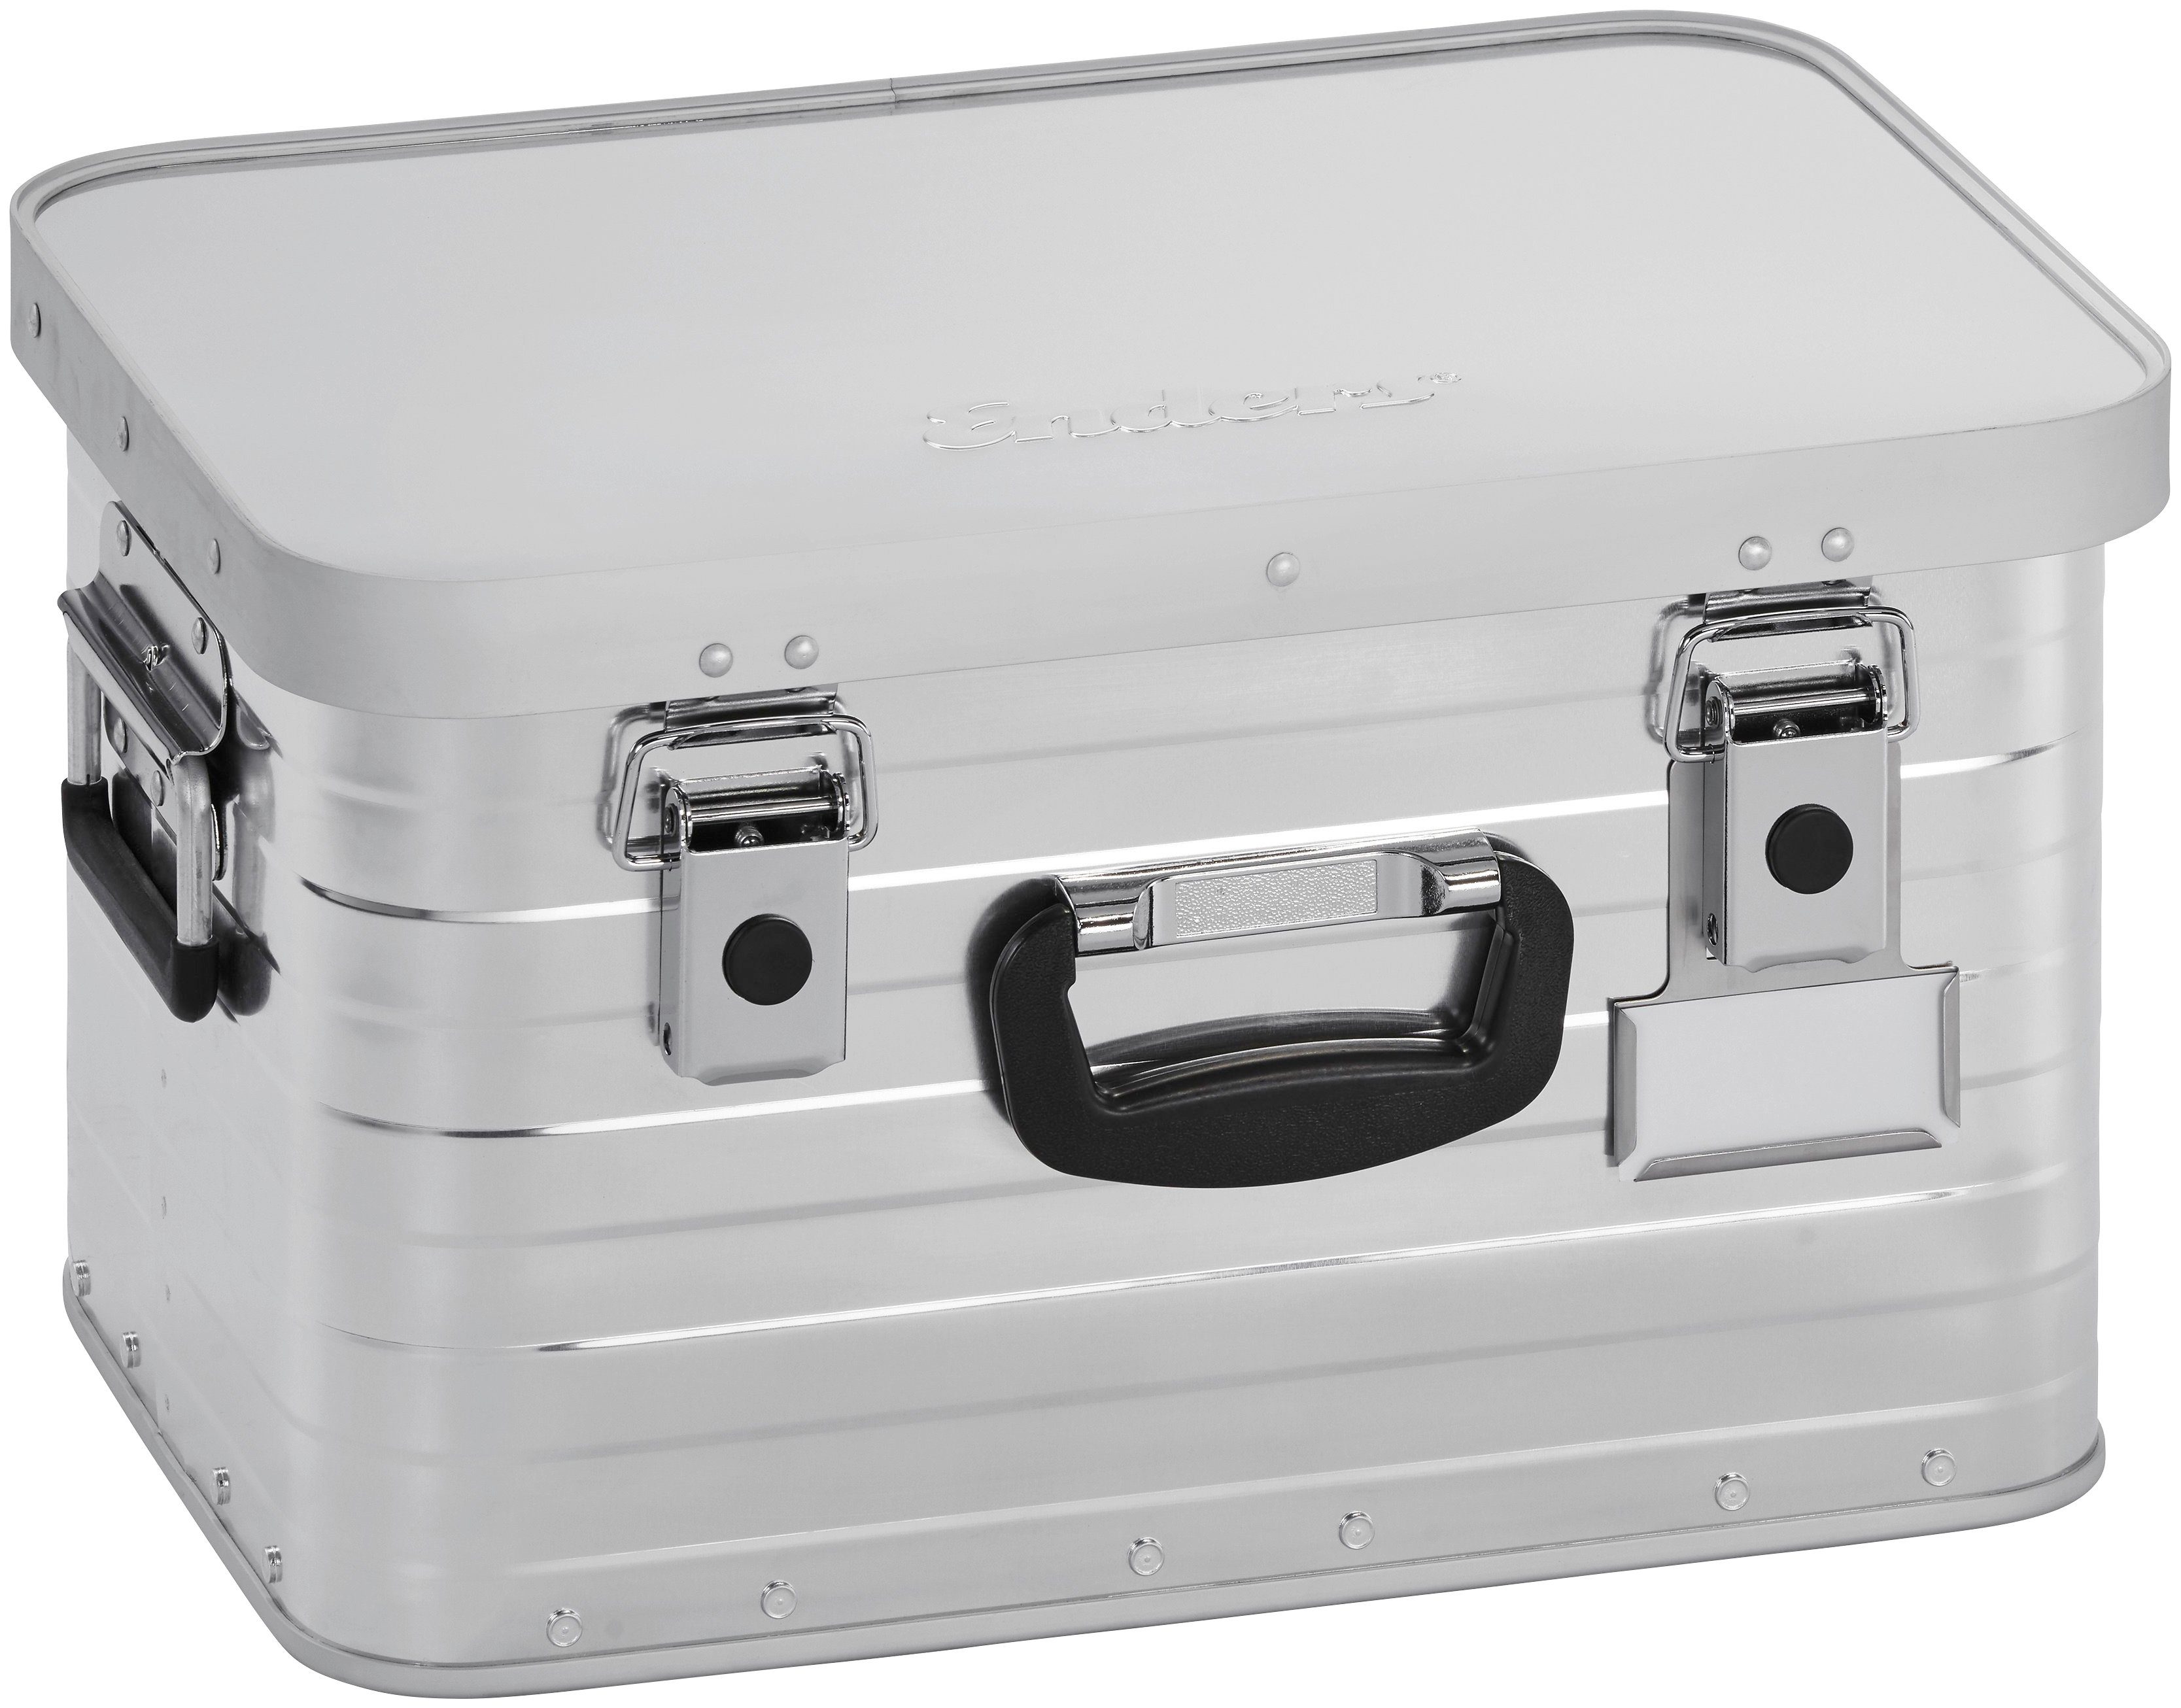 Enders® Aufbewahrungsbox Toronto S, Aluminium, BxTxH: 45,7x31,7x26,2 cm, 29 Liter | Frischhaltedosen